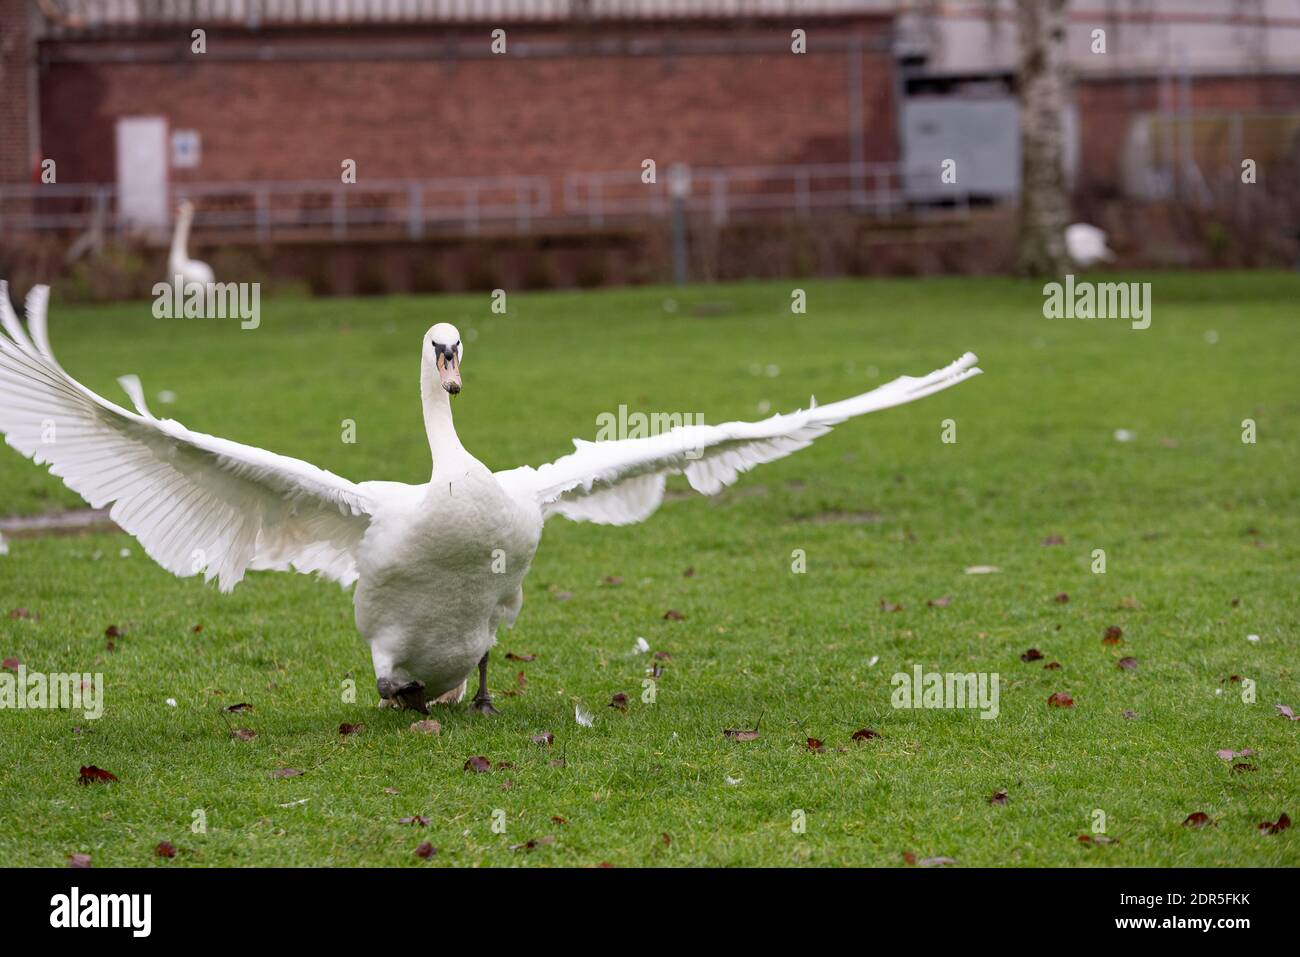 white swan in uk park winter light Stock Photo